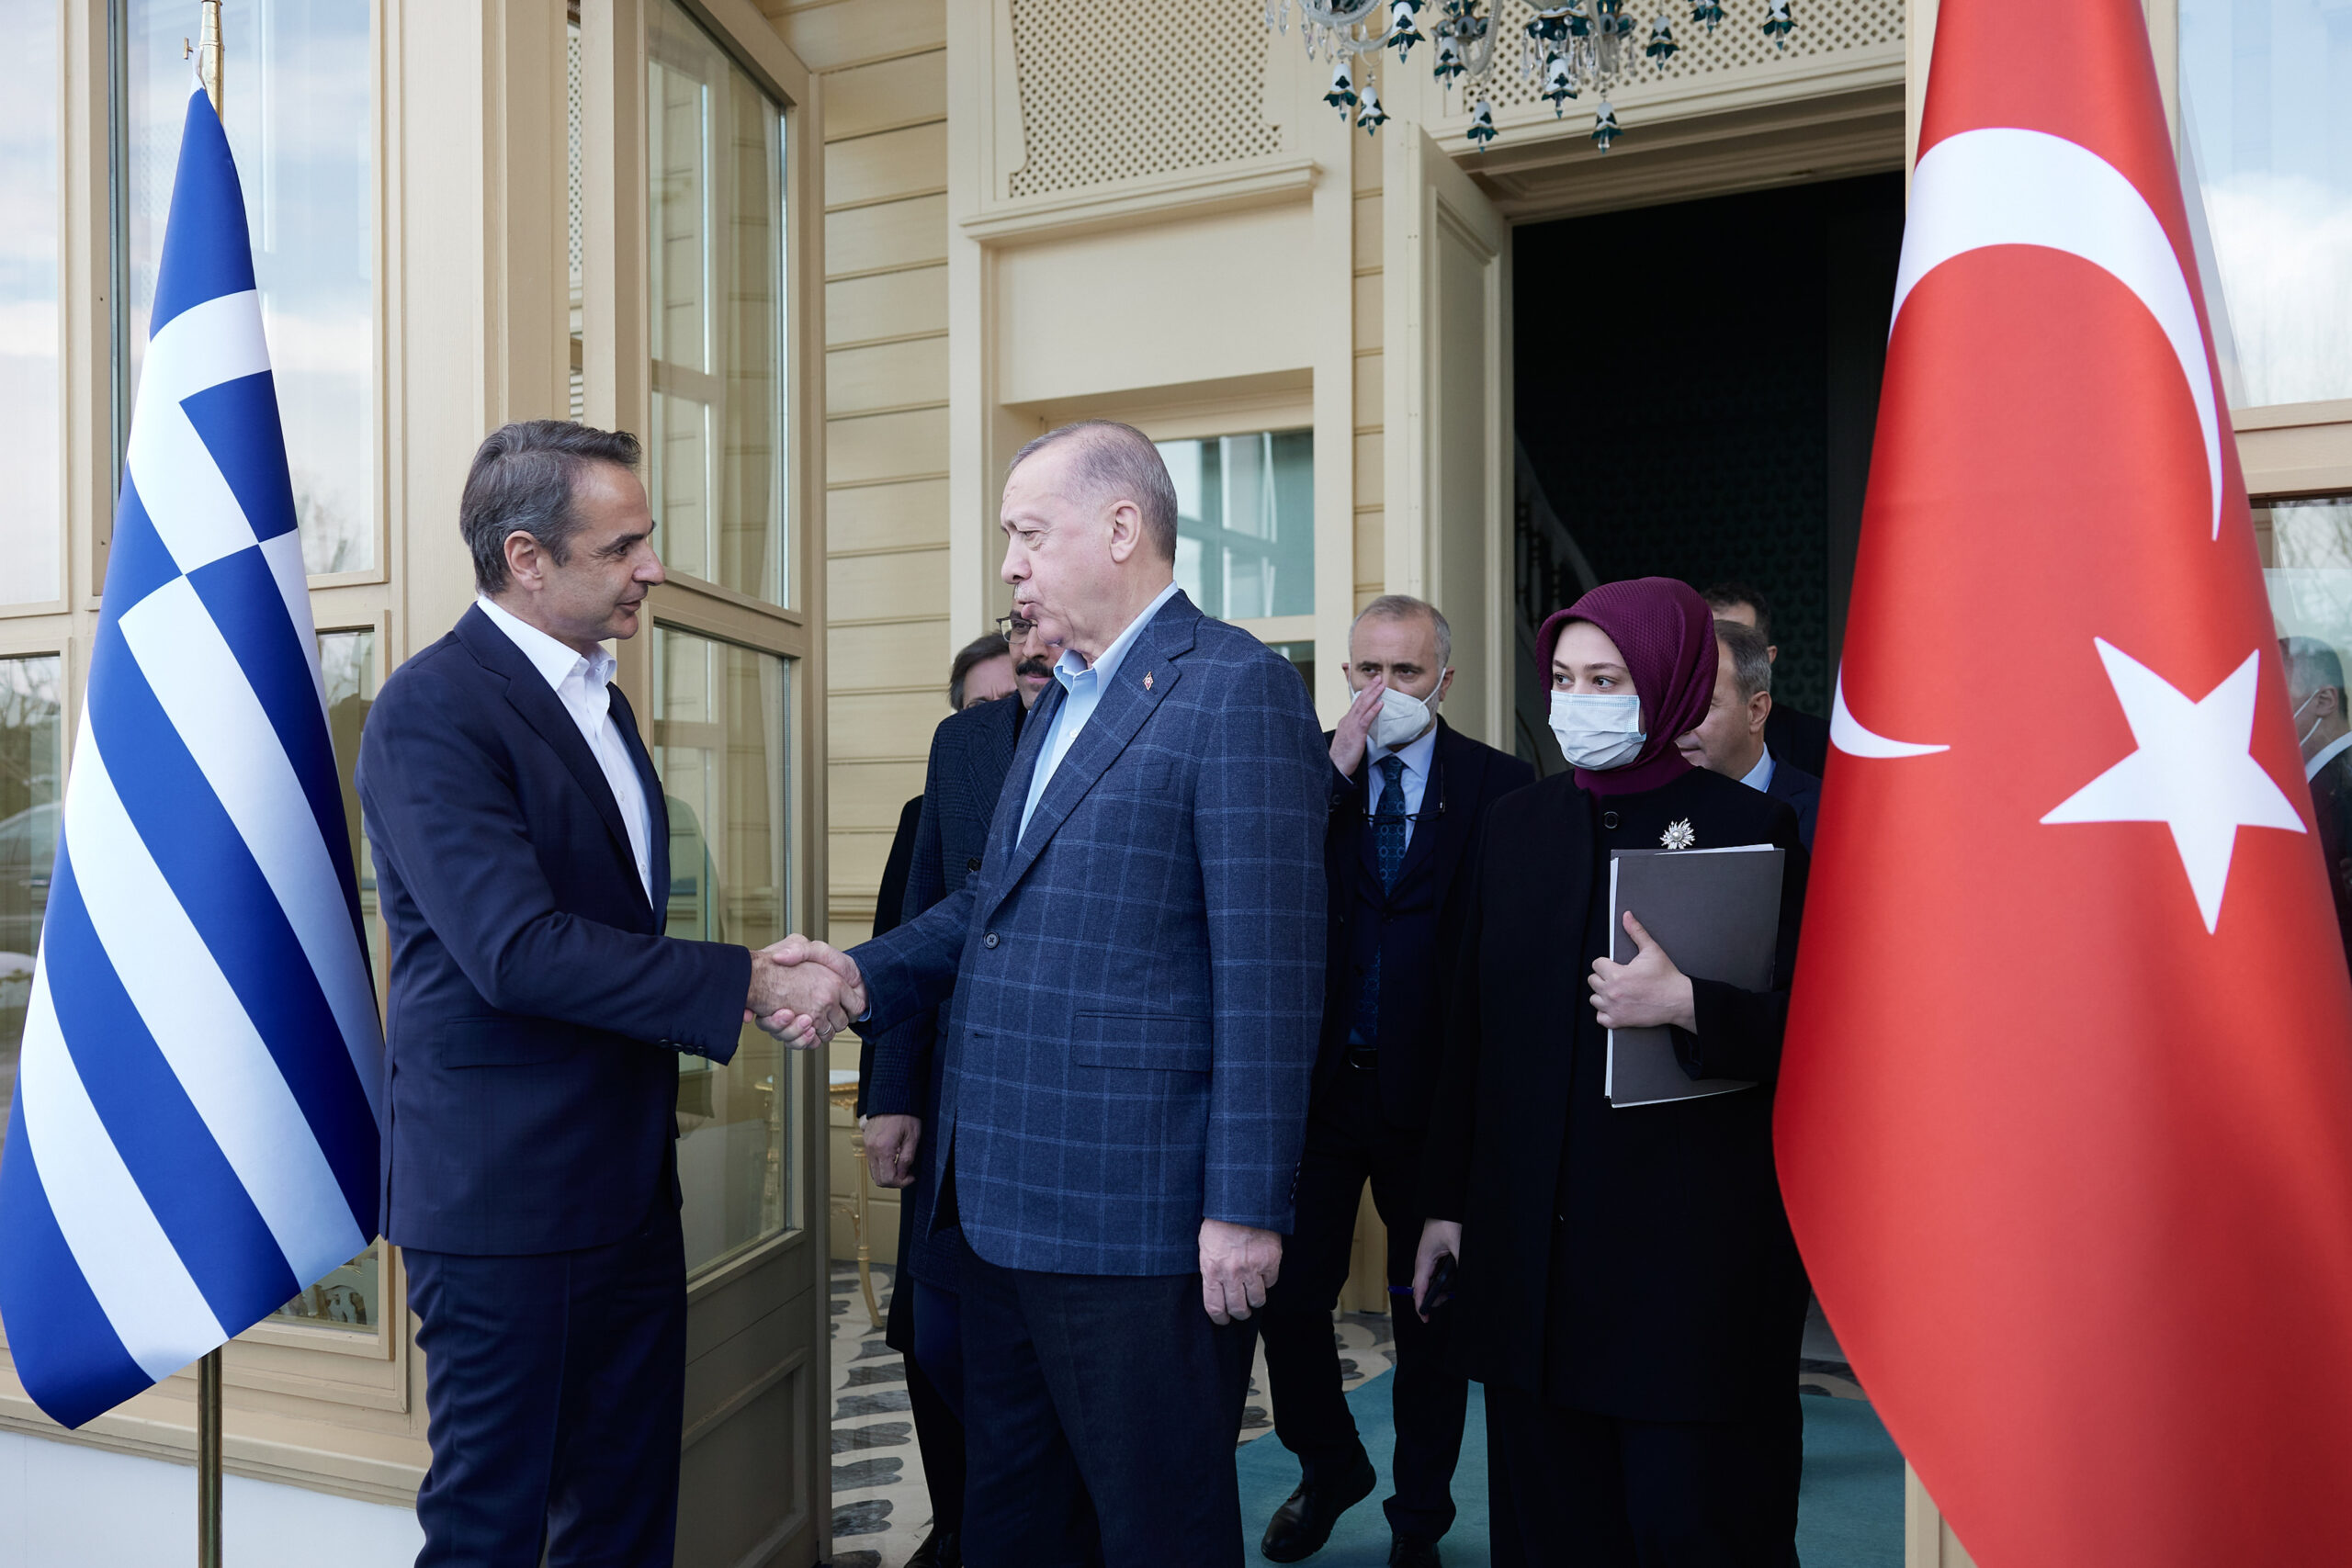 Αντίστροφη μέτρηση για την επίσκεψη Ερντογάν στην Αθήνα- Μηνύματα φιλίας και συνεργασίας, αλλά με τις πάγιες τουρκικές θέσεις, το θετικό κλίμα επιδίωξη της ελληνικής πλευράς